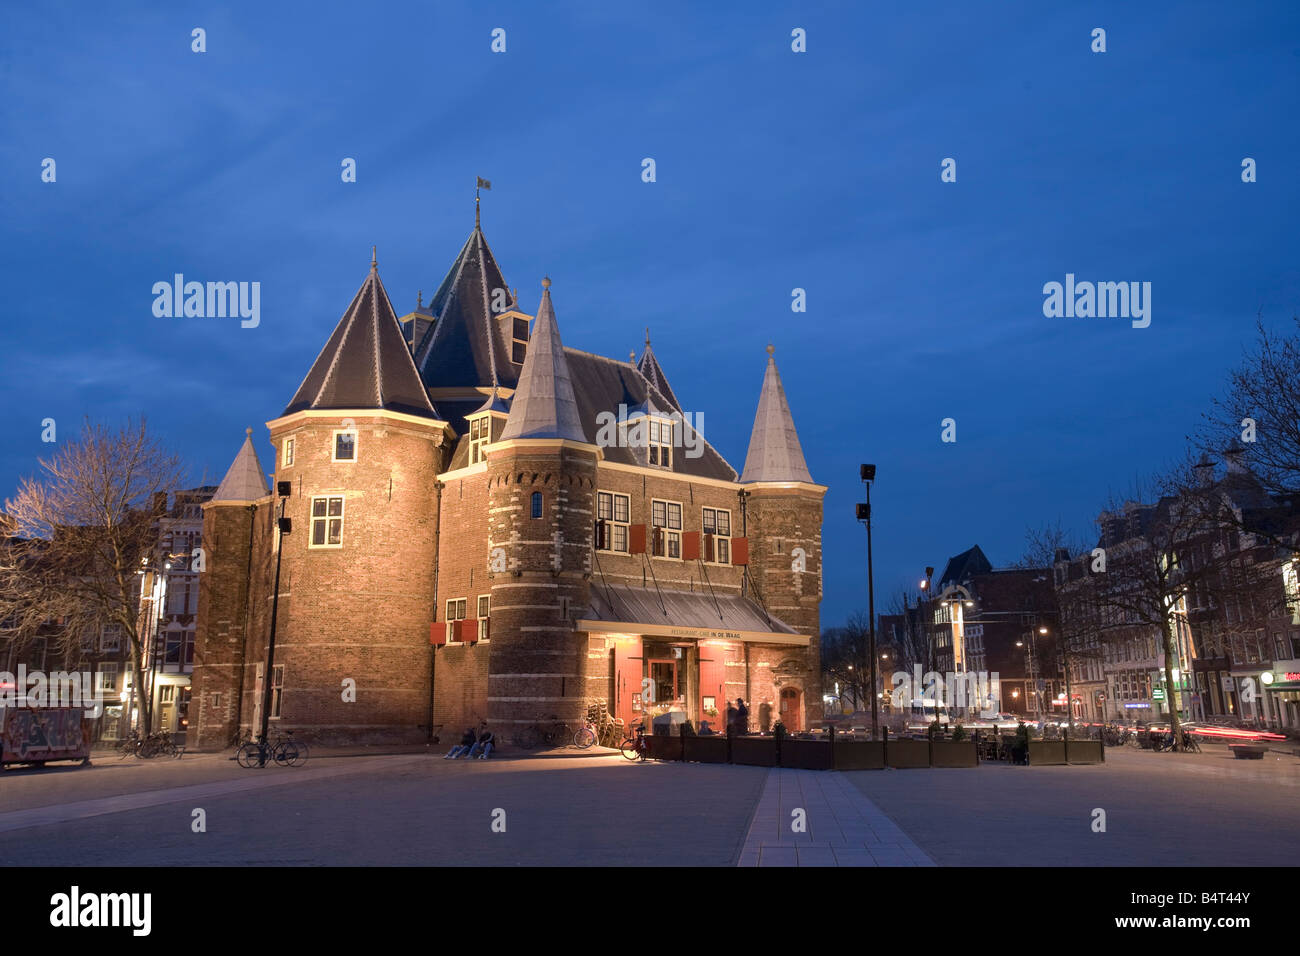 Place Nieuwmarkt et bâtiment historique Waag, crépuscule, Amsterdam, Pays-Bas Banque D'Images